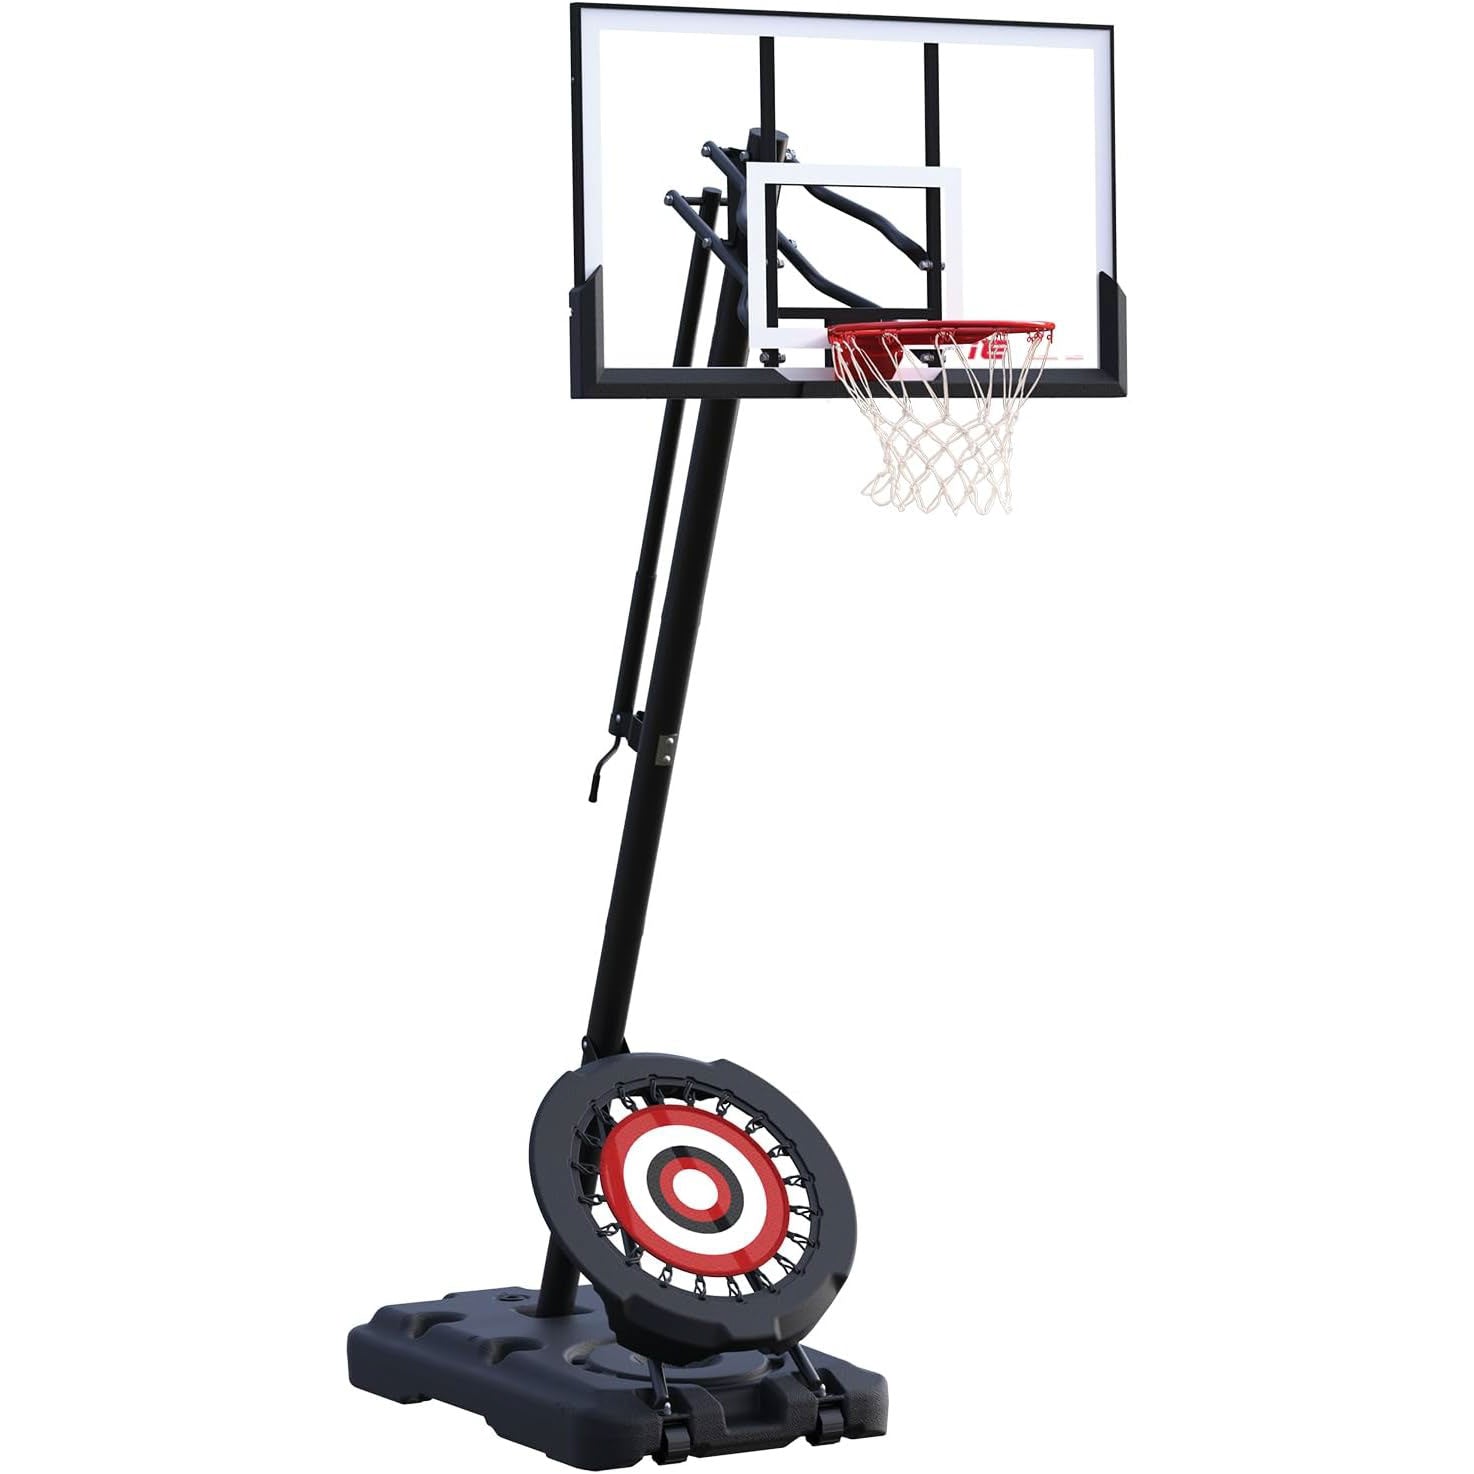 54" Backboard Basketball Hoop